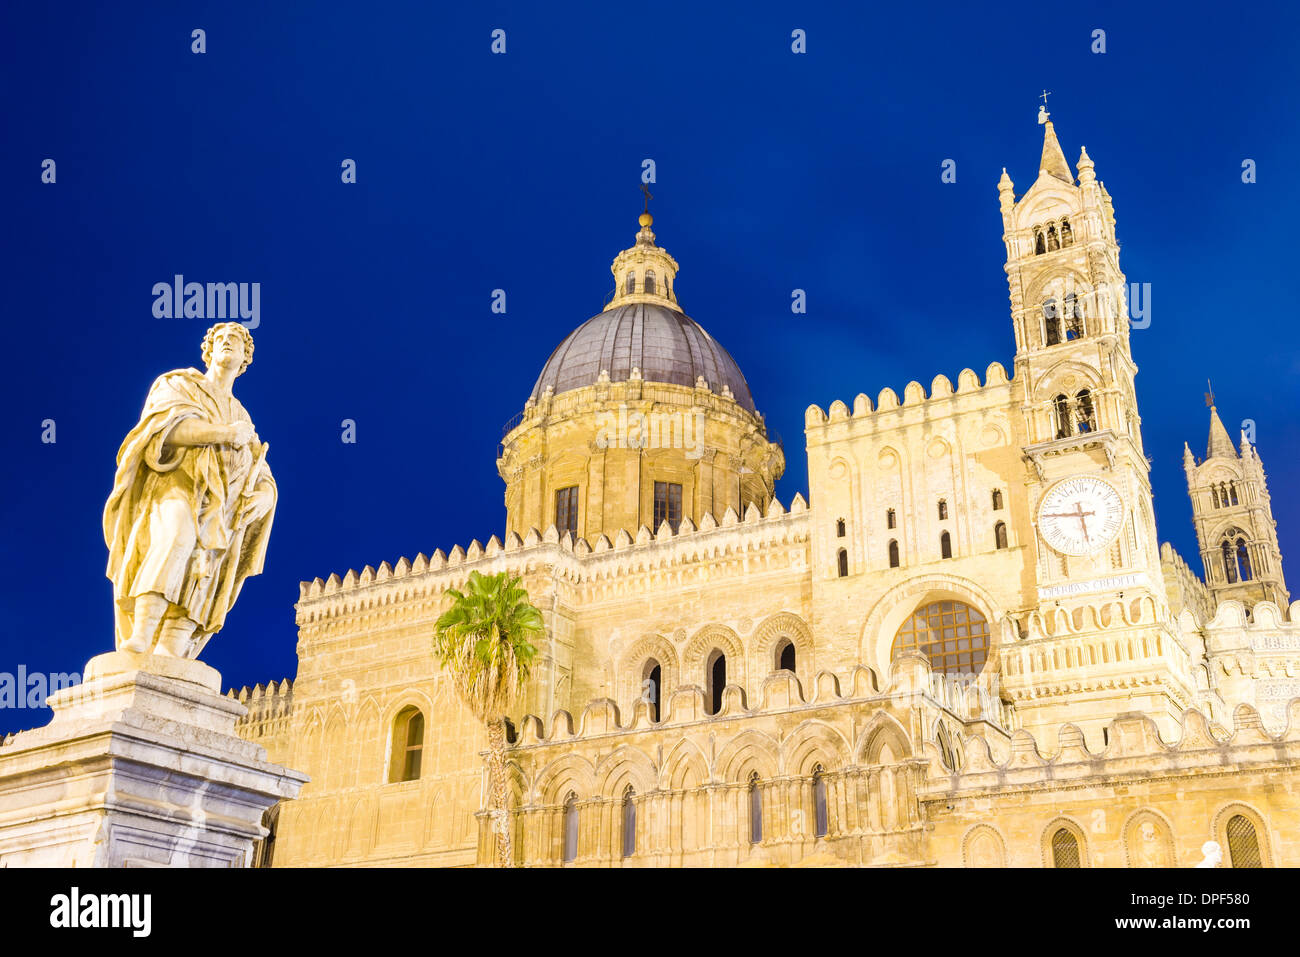 La cathédrale de Palerme la nuit (Duomo di Palermo), montrant la statue, la coupole et la tour de l'horloge, Palermo, Sicily, Italy, Europe Banque D'Images